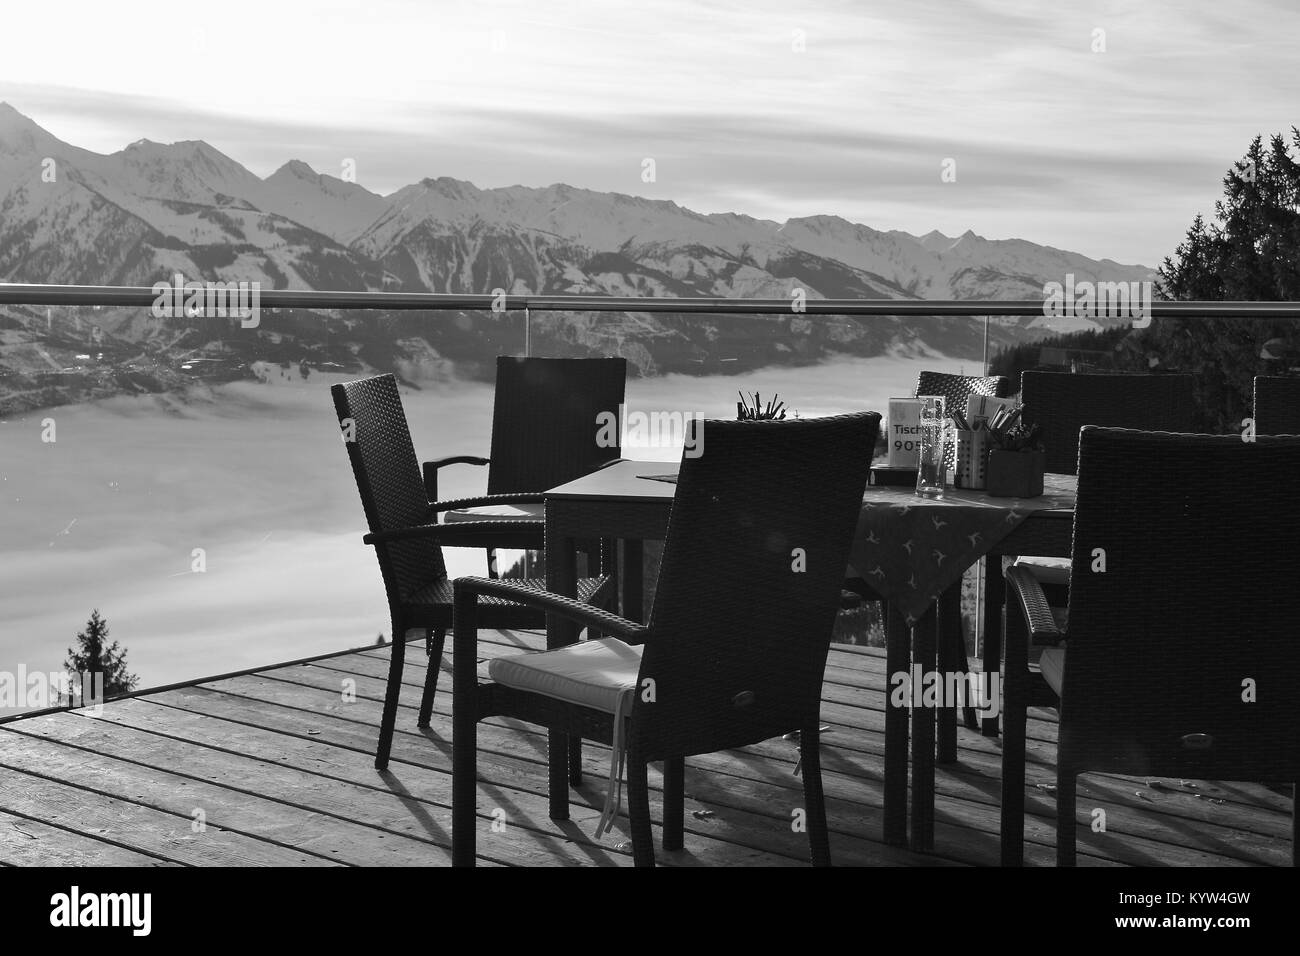 Stühle auf der Terrasse des Cafés in die Berge und die Aussicht auf die Hohen Tauern in der Region Zell am See - Kaprun, im Winter. Österreich, Europa. Stockfoto